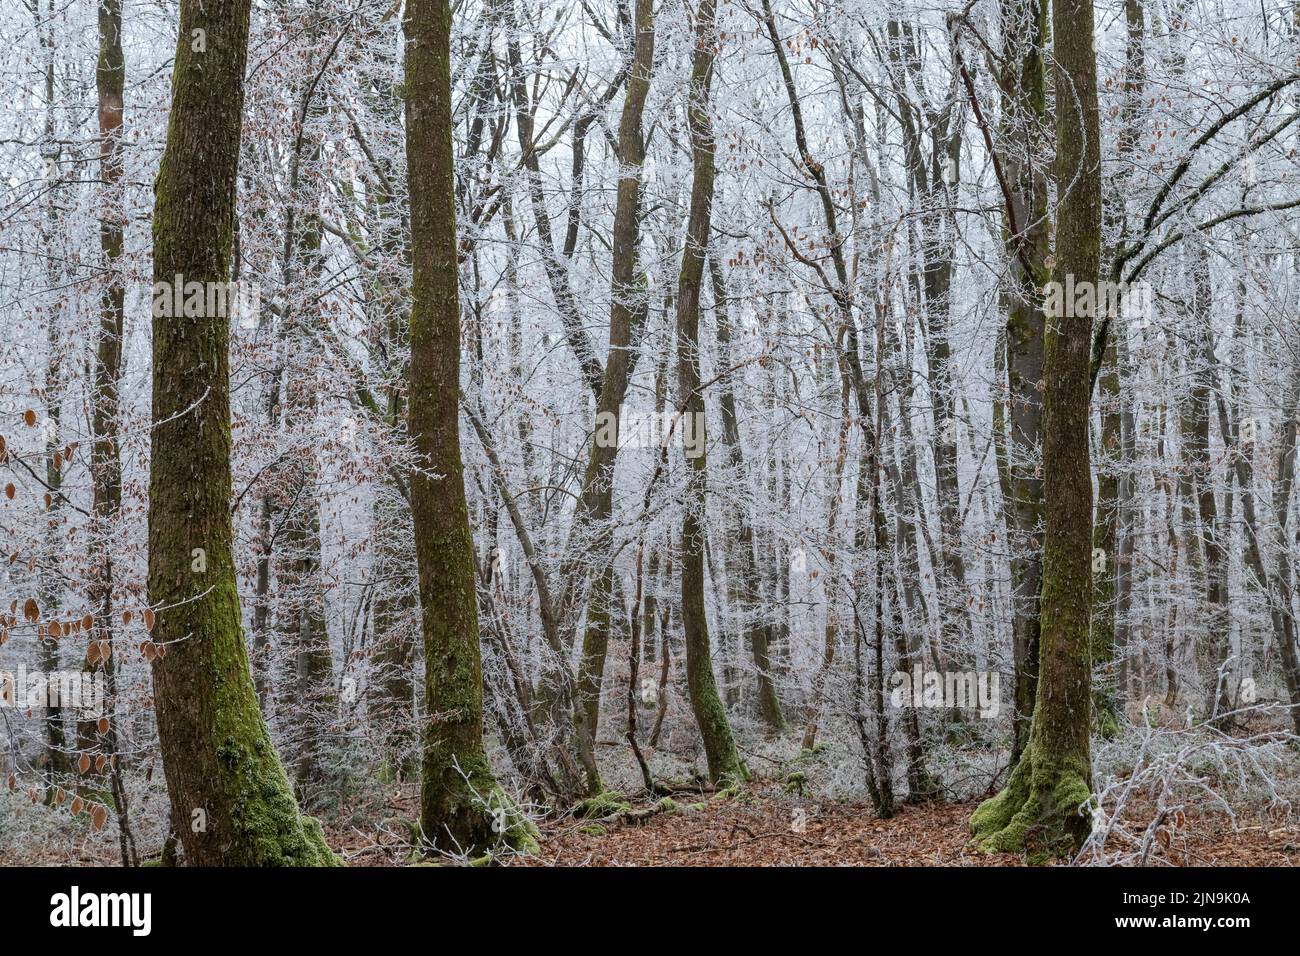 France, cher, Berry, Morogues, Forêt de la borne, forêt transmise en hiver avec gel // France, cher (18), Berry, Morogues, forêt de la borne en hiver Banque D'Images